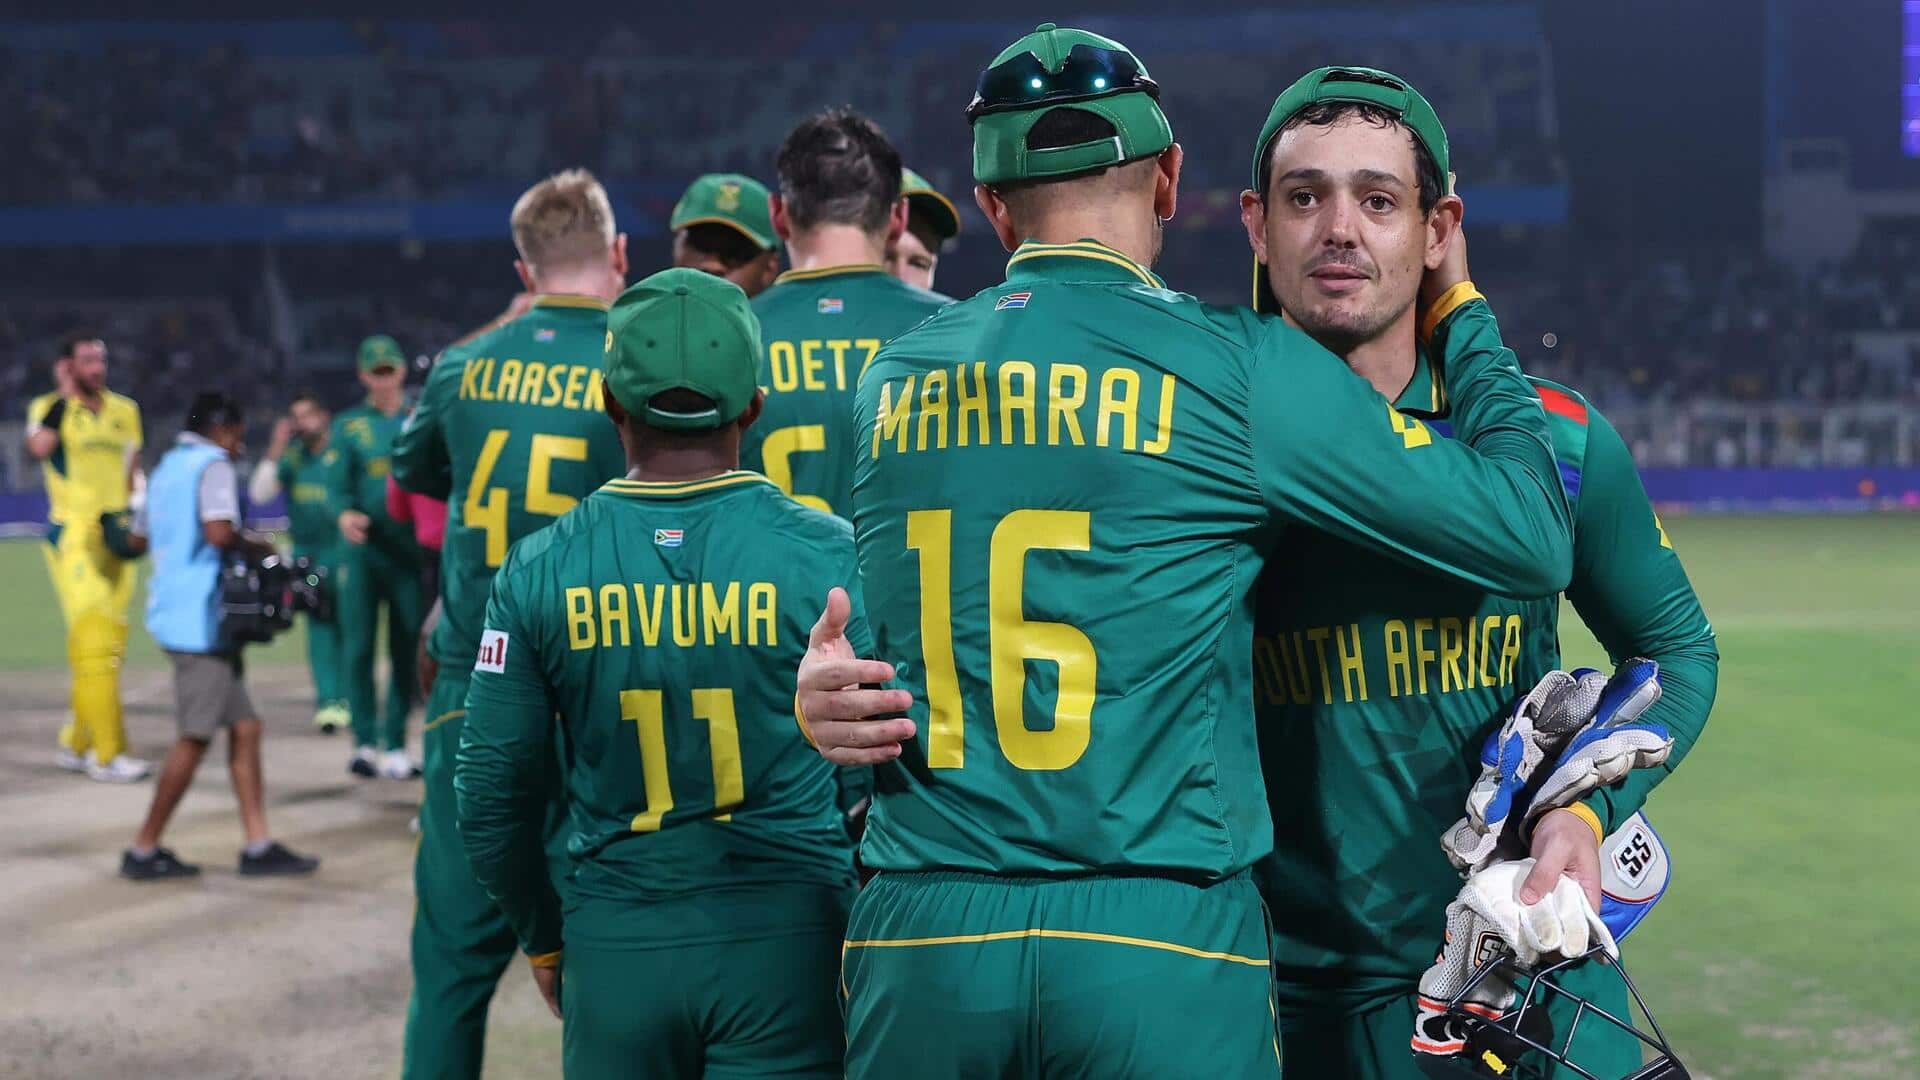 वनडे विश्वकप 2023: दक्षिण अफ्रीका के प्रमुख खिलाड़ियों का टूर्नामेंट में कैसा रहा प्रदर्शन? जानिए आंकड़े 